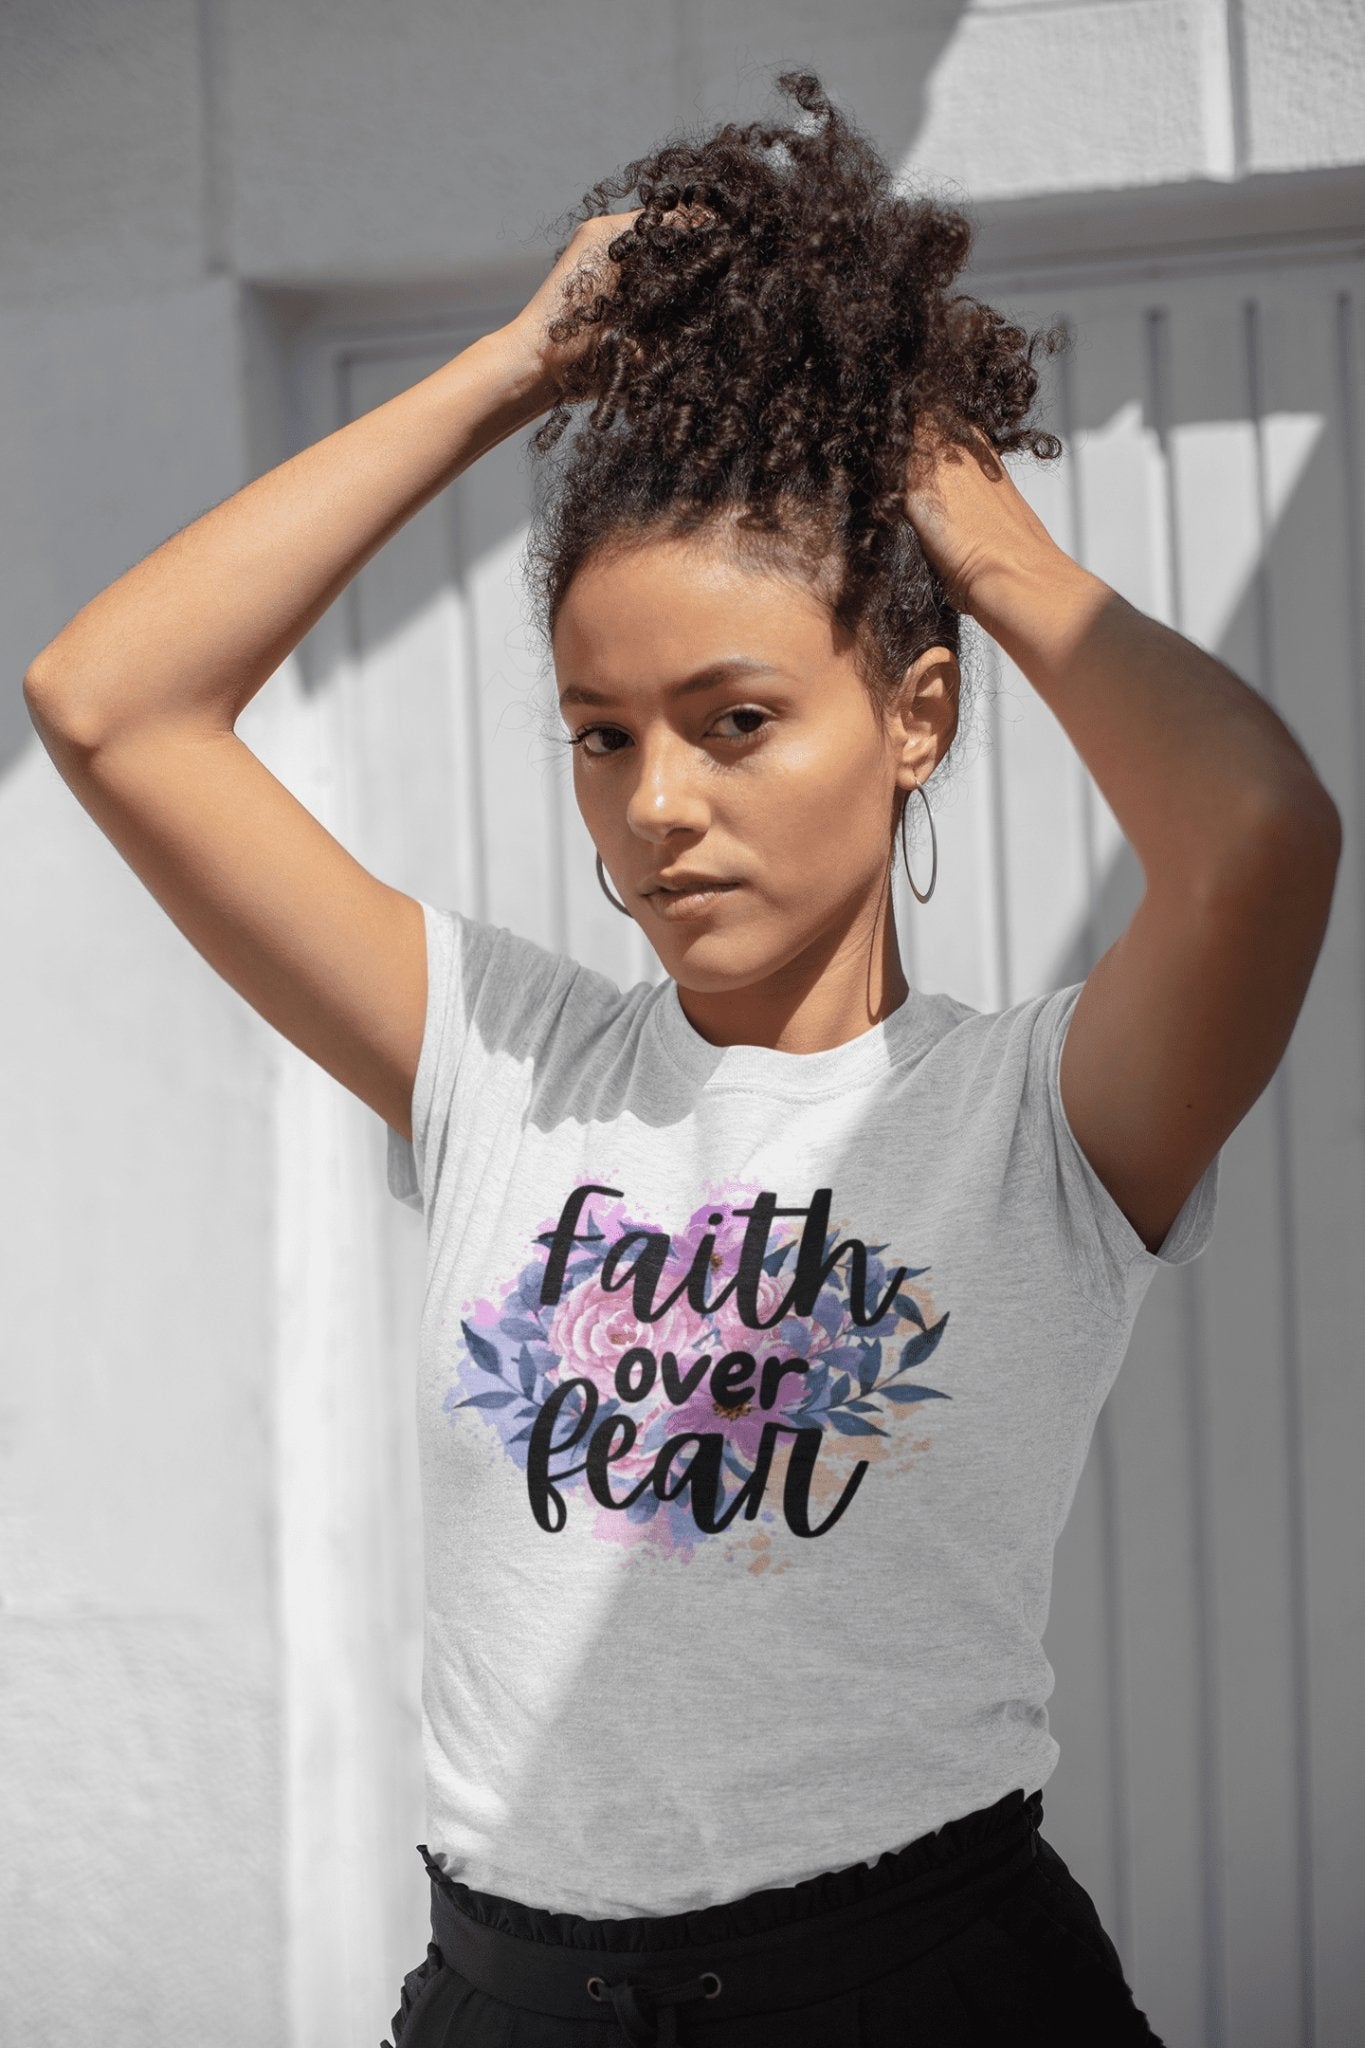 Faith over Fear Premium Frauen Shirt - Make-Hope